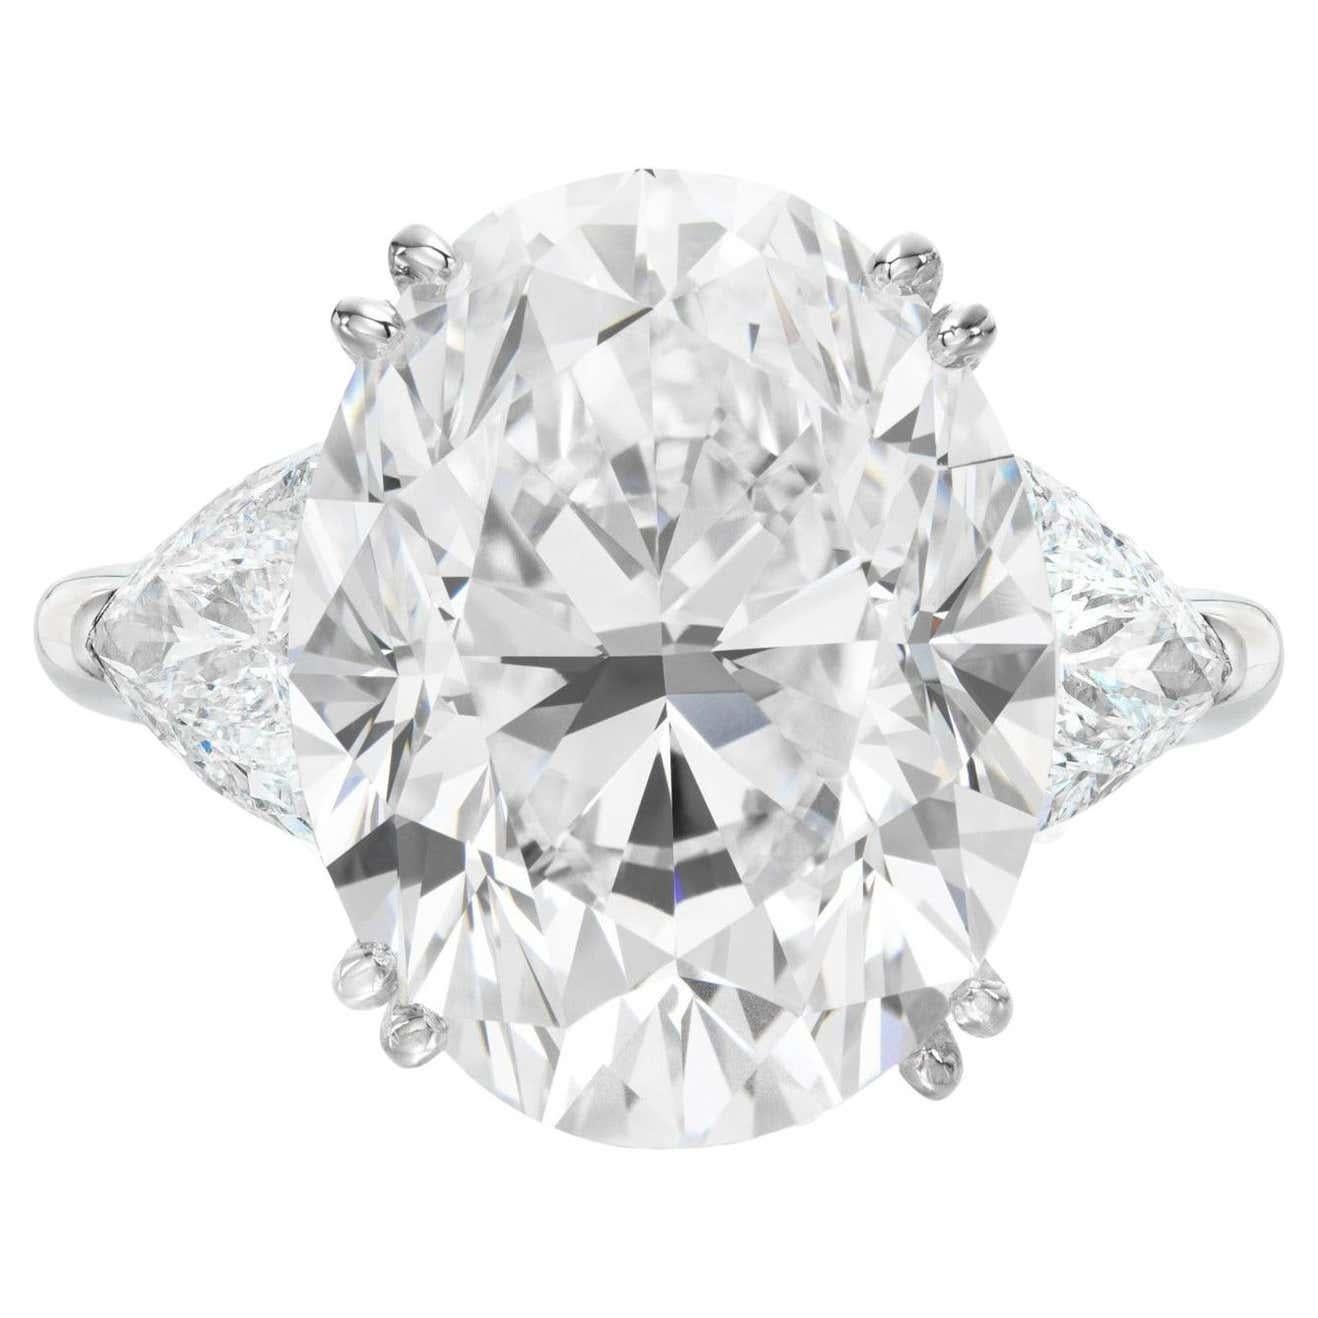 Admirez le summum du luxe et de la sophistication - notre extraordinaire diamant ovale de 10 carats, un chef-d'œuvre d'une beauté et d'un raffinement inégalés. Certifié par le très estimé Gemological Institute of America (GIA) comme pierre précieuse